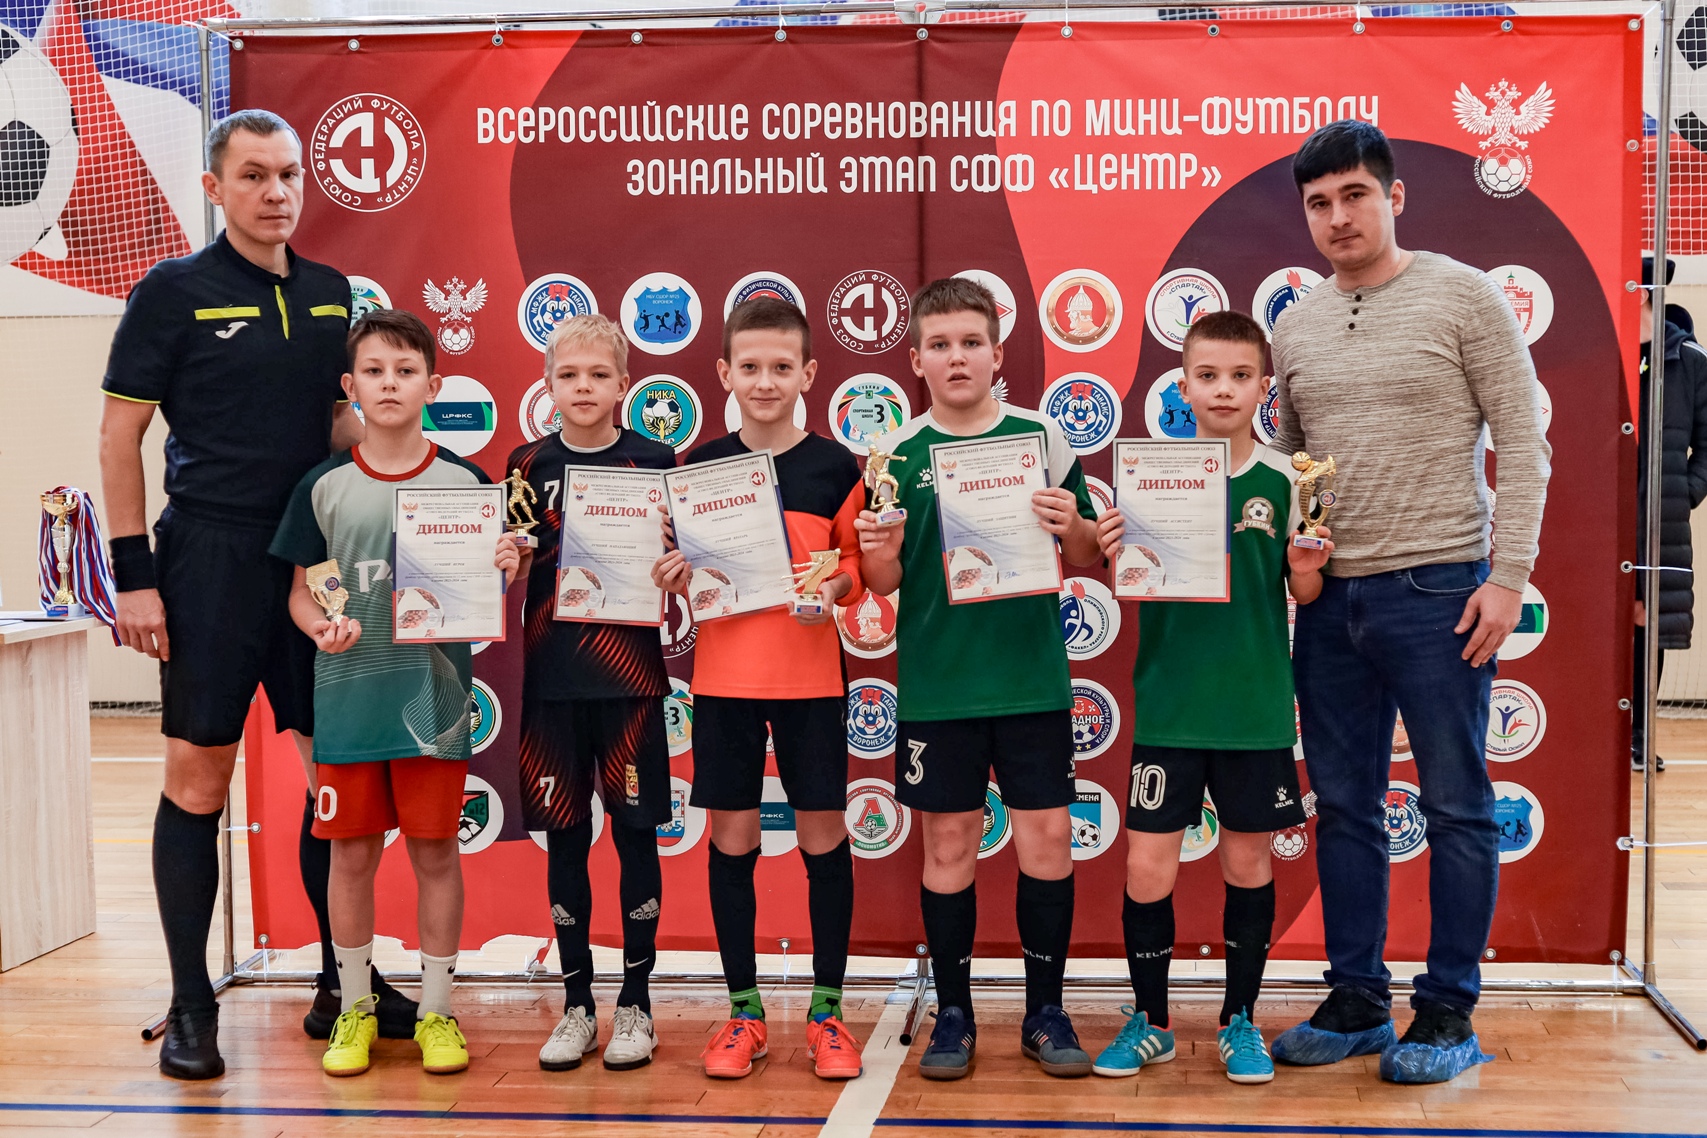 Команда из Губкина победила в зональном турнире